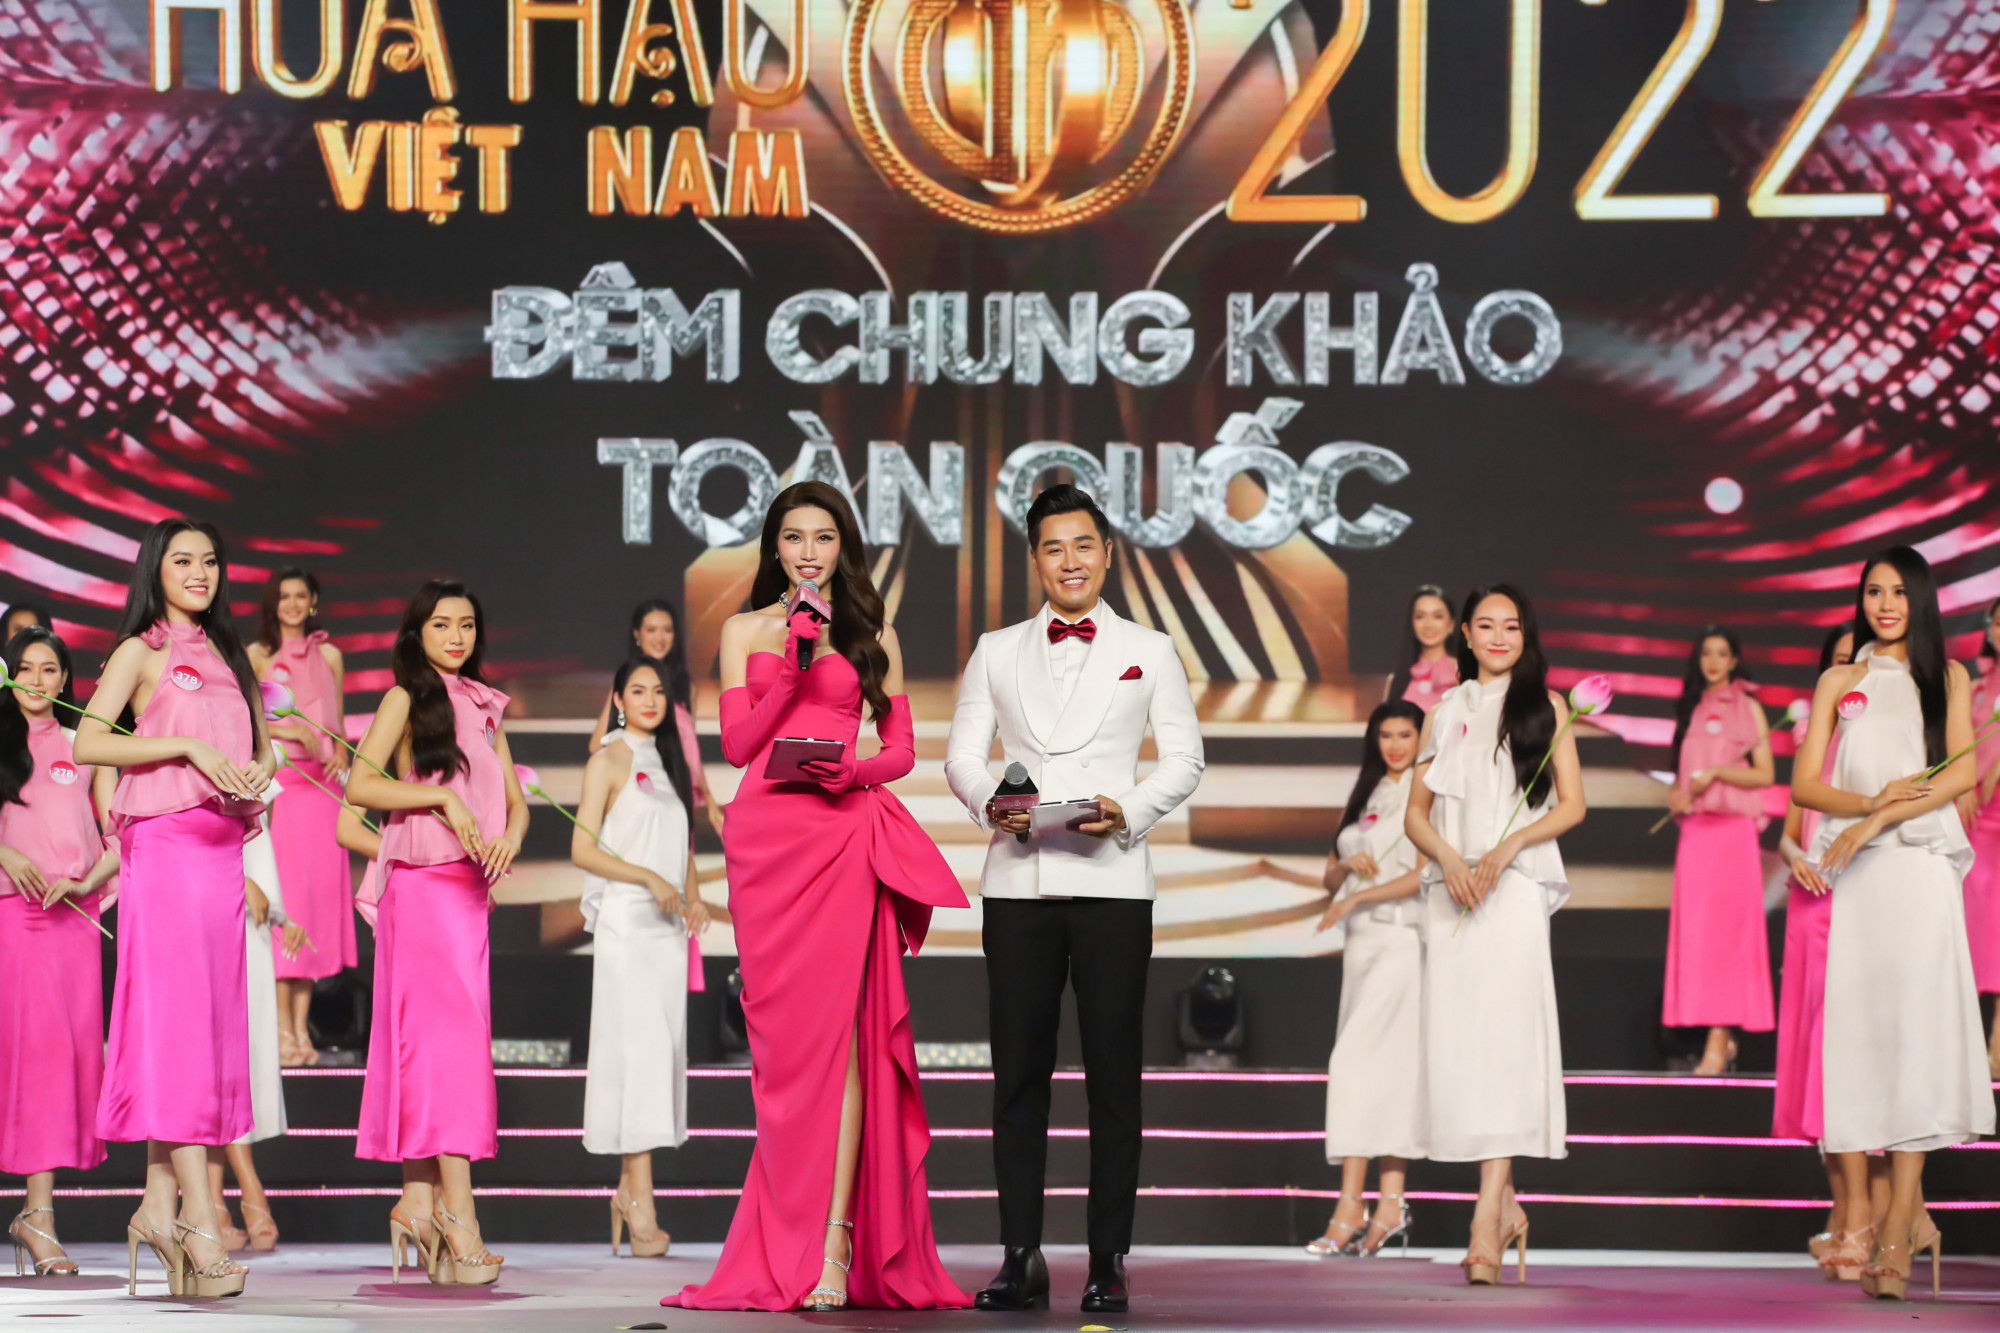 Á hậu Quỳnh Châu và MC Nguyên Khang mắc nhiều lỗi khi dẫn dắt đêm thi chung khảo này